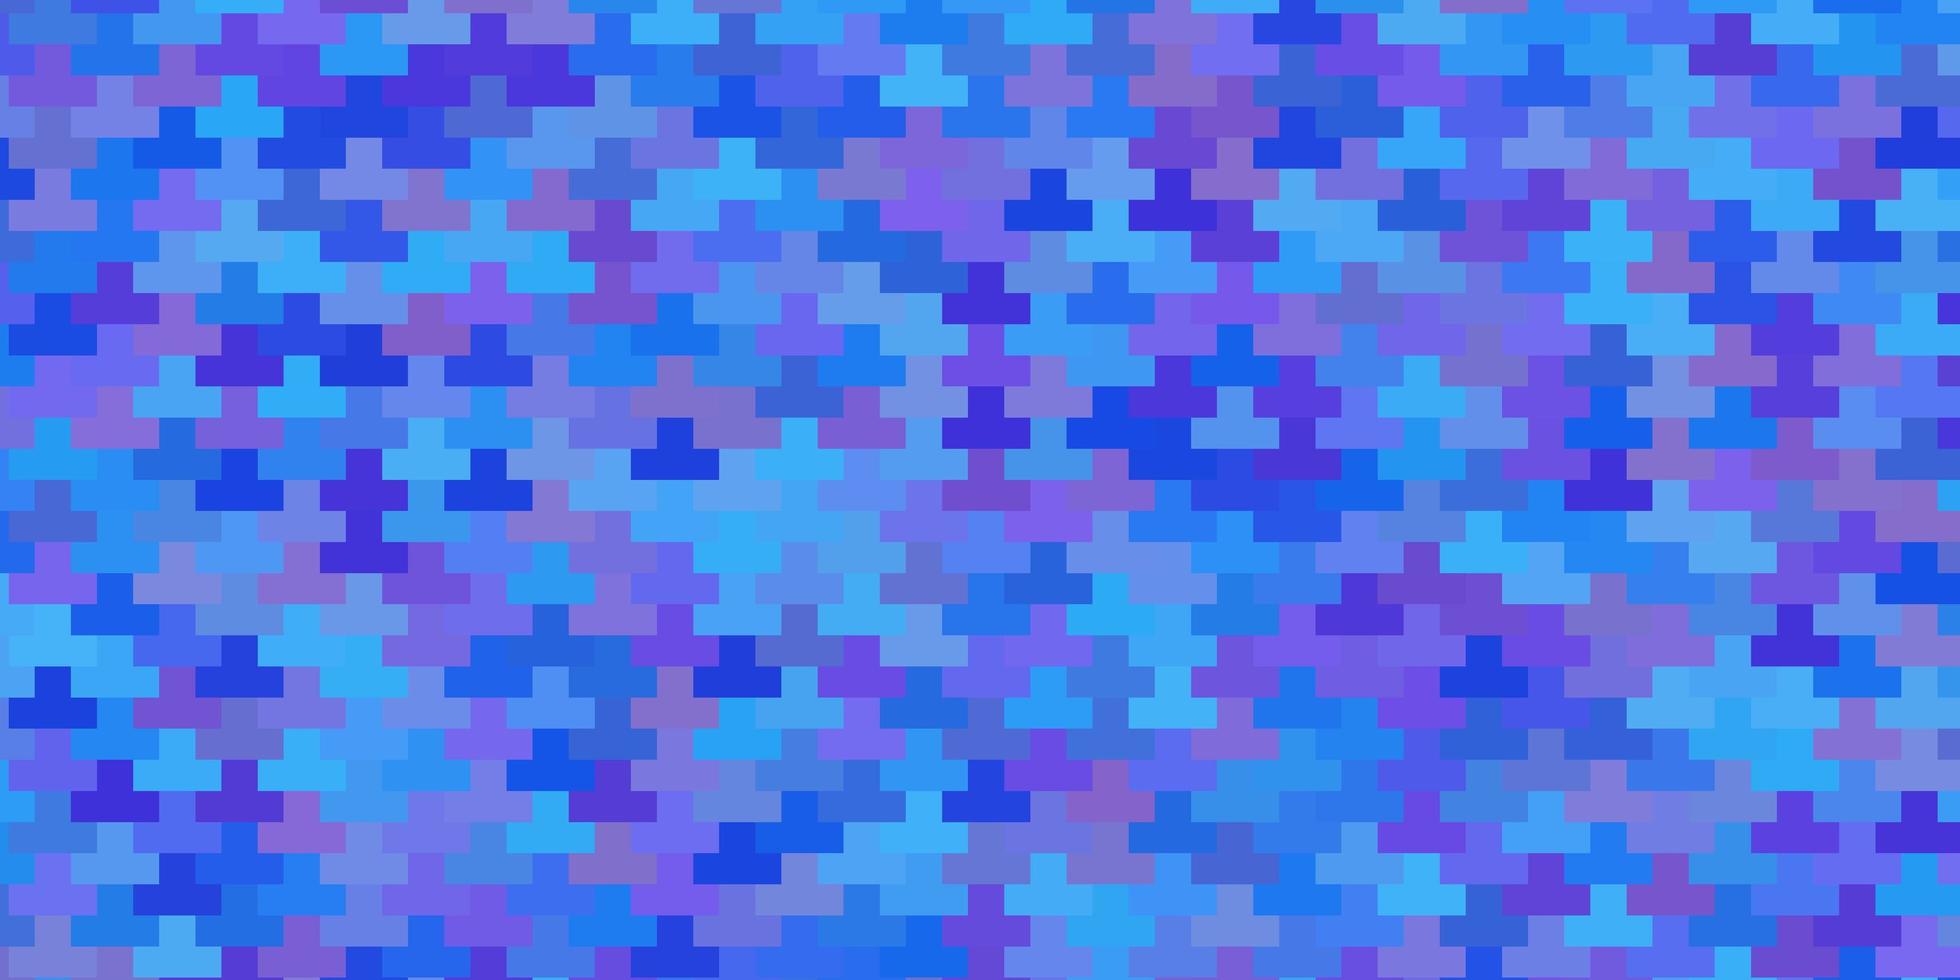 modèle vectoriel rose clair, bleu dans des rectangles.